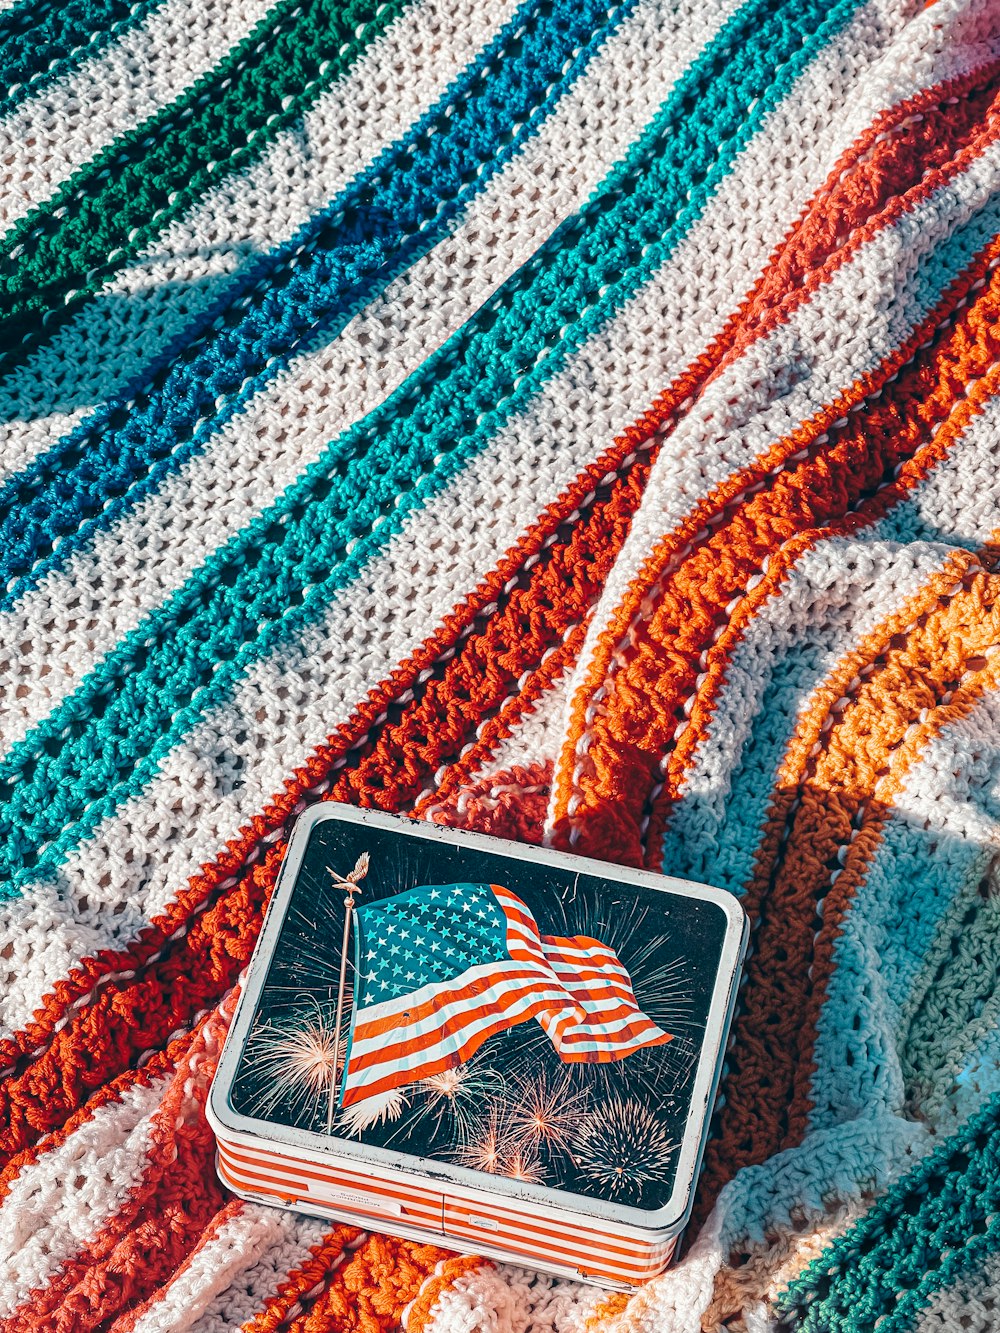 Una manta de ganchillo con una bandera estadounidense